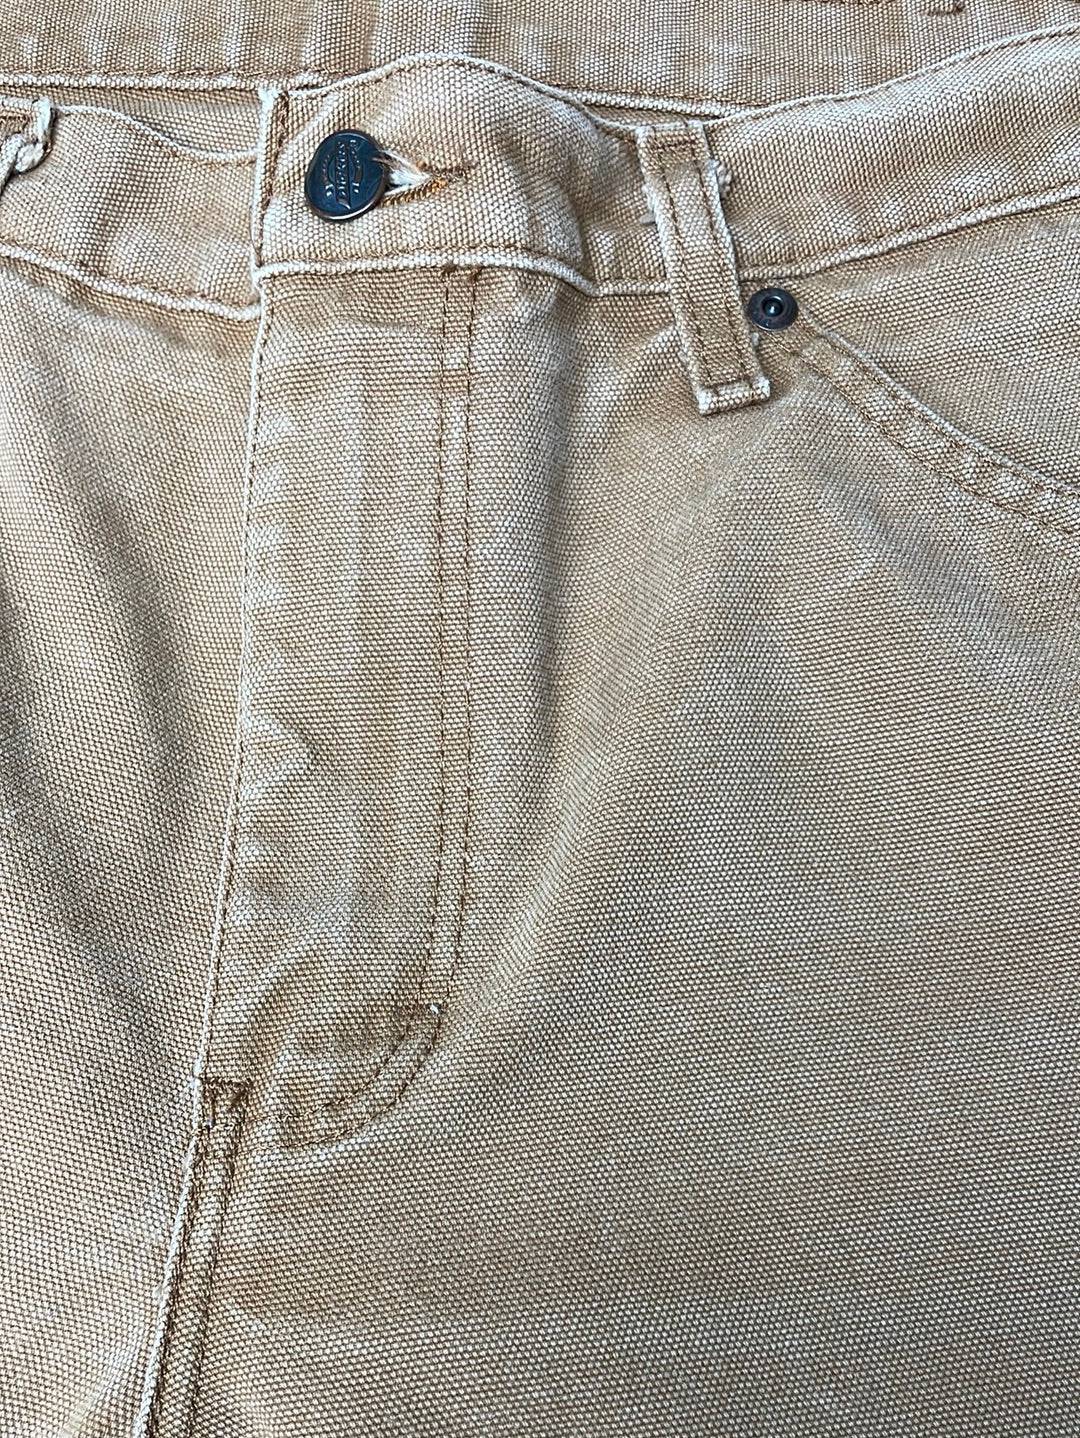 Vintage Dickies Jeans Brown // W32 L30 - RHAGHOUSE VINTAGE